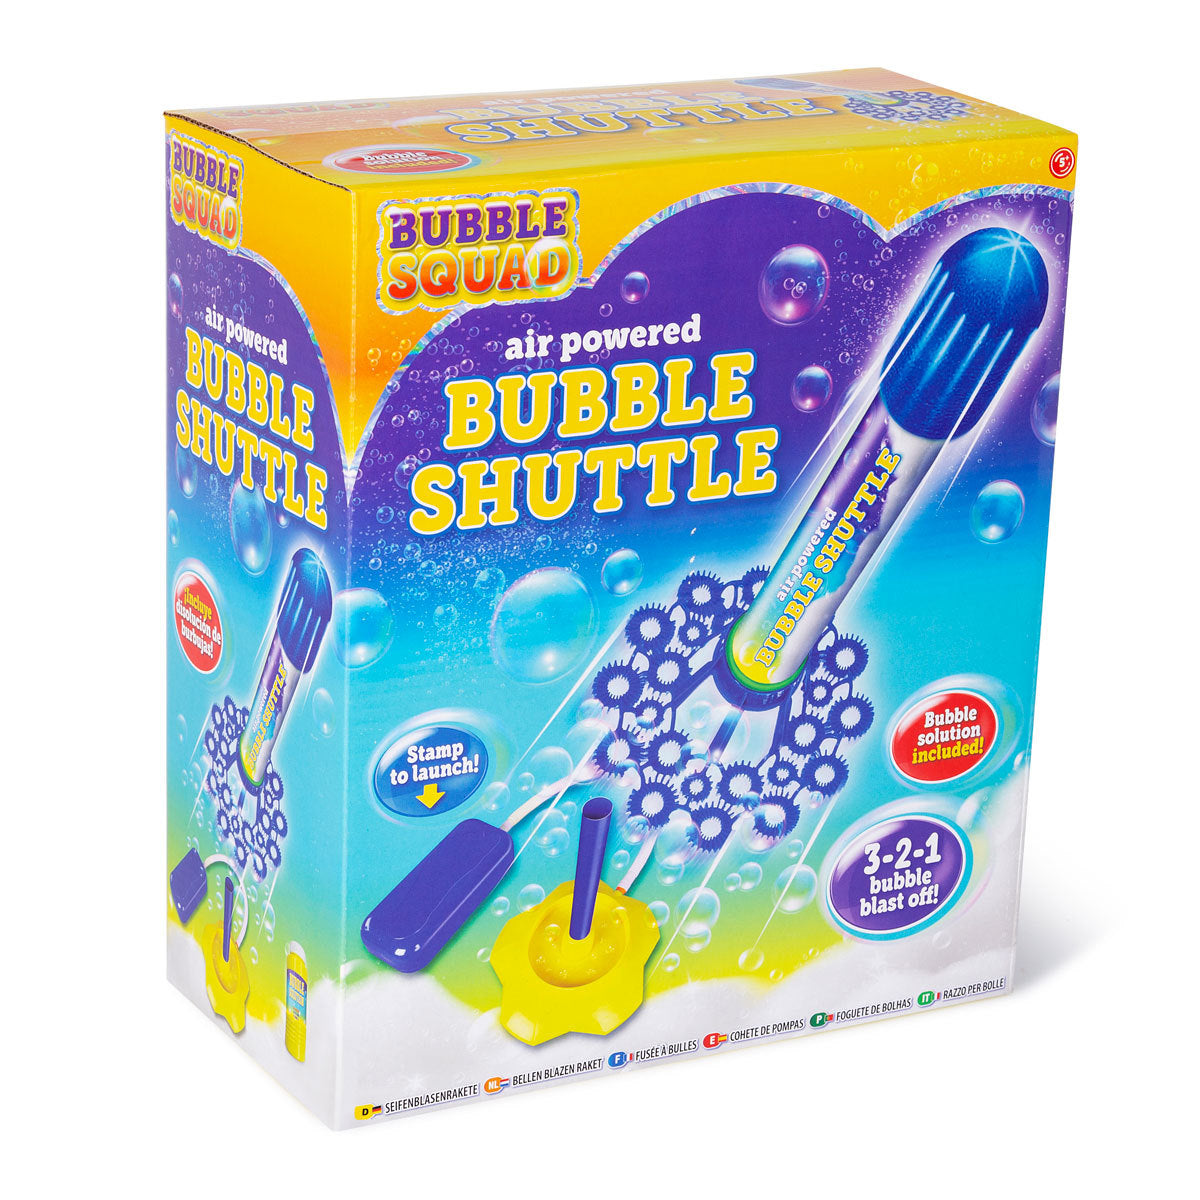 Bubble Squad Air Powered Bubble Shuttle